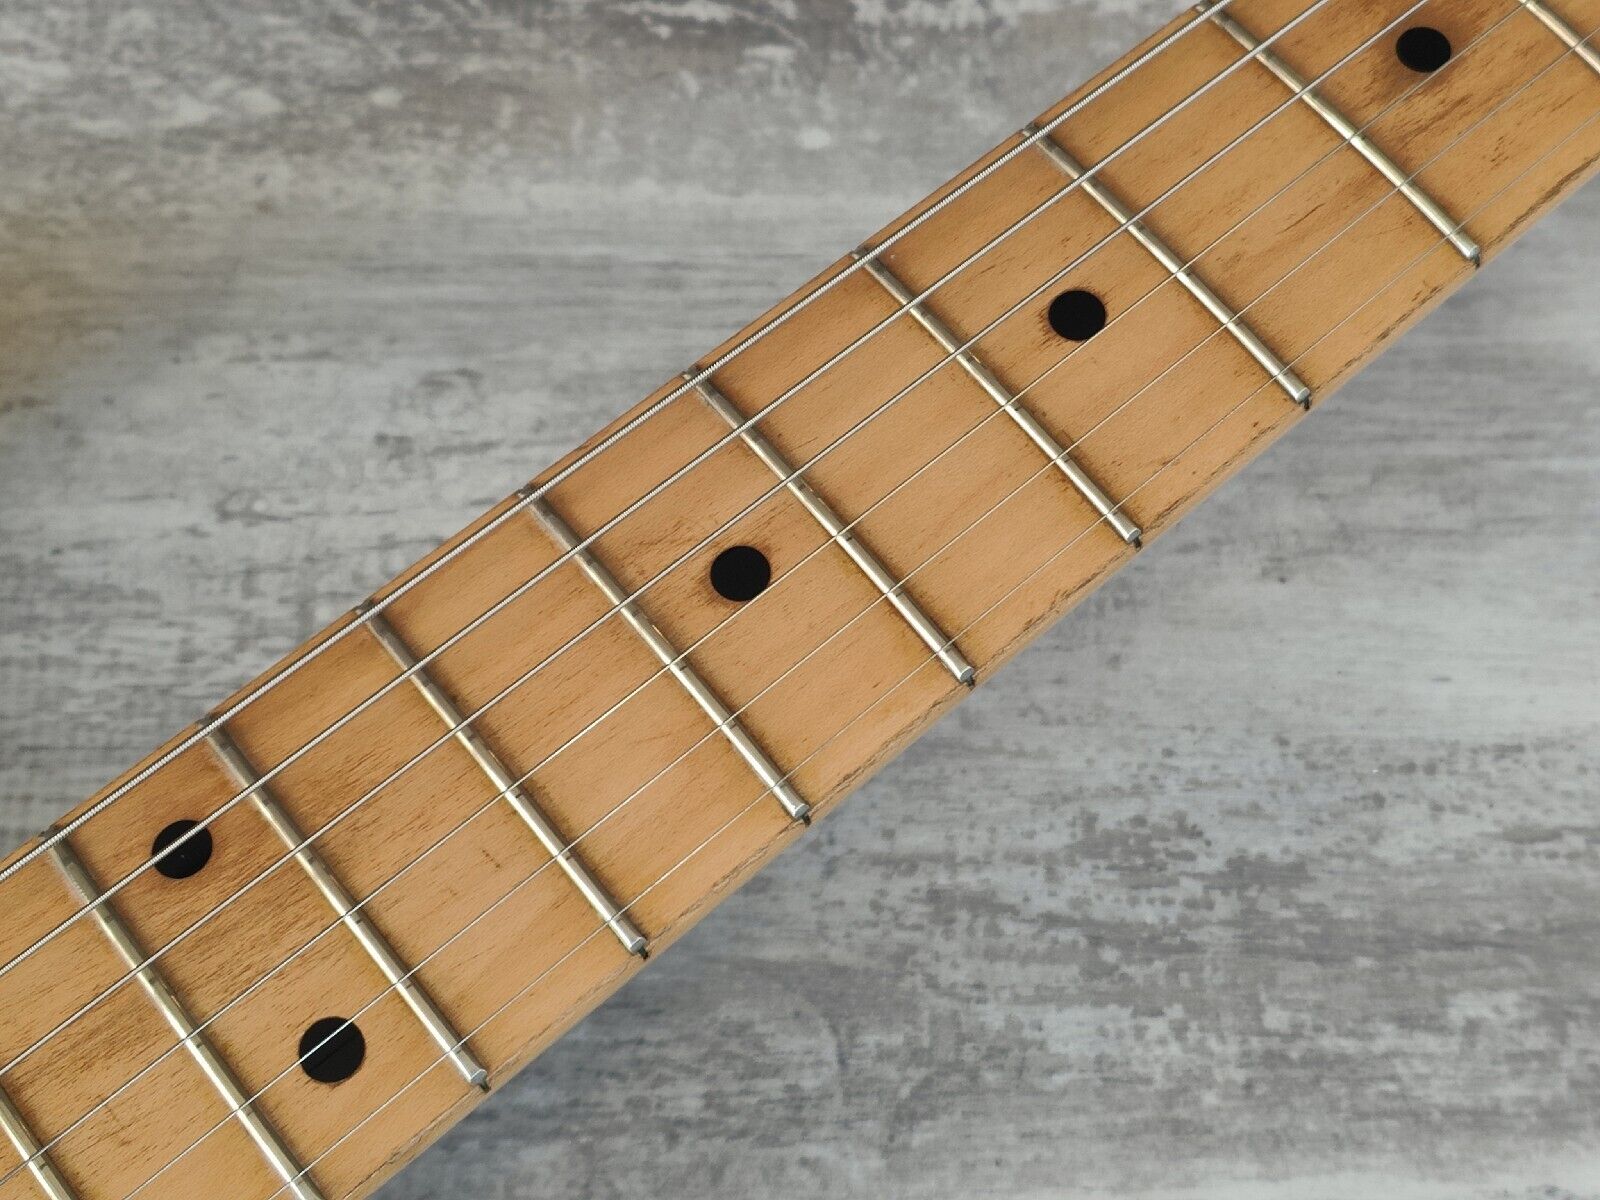 1989 Fender Japan Stratocaster Standard (Refinished Daphne Blue)